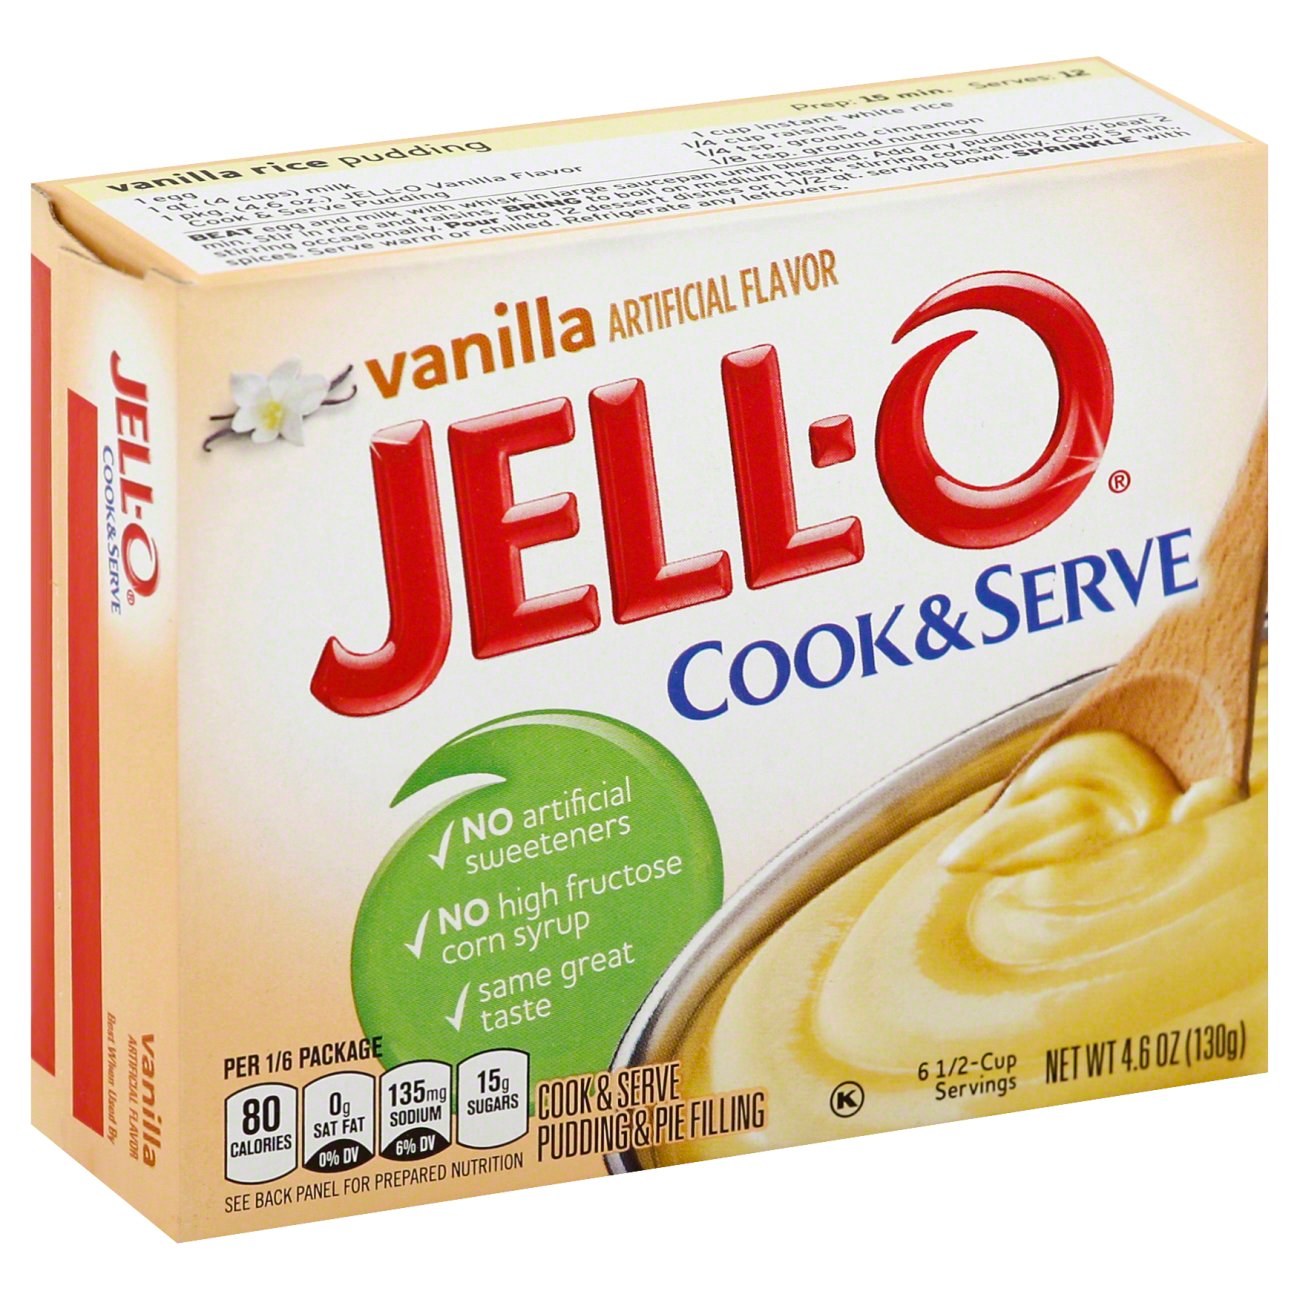 พุดดิ้ง ออริจินอล พุดดิ้ง วานิลี น้ำหนัก 130 กรัม Makes : 12 servings Pudding-vanilla Flavour by Jello Brand  นำเข้าจากอเมริกา อร่อยง่ายๆ สำหรับทำขนมพุดดิ้ง รสวานิลลา เป็นขนมหวานเพื่อสุขภาพ ควบคุมน้ำหนัก เติมผลไม้ สตอรเบอร์รี่ ส้ม น้ำหนักสุทธิ 3 x 37 กรัม